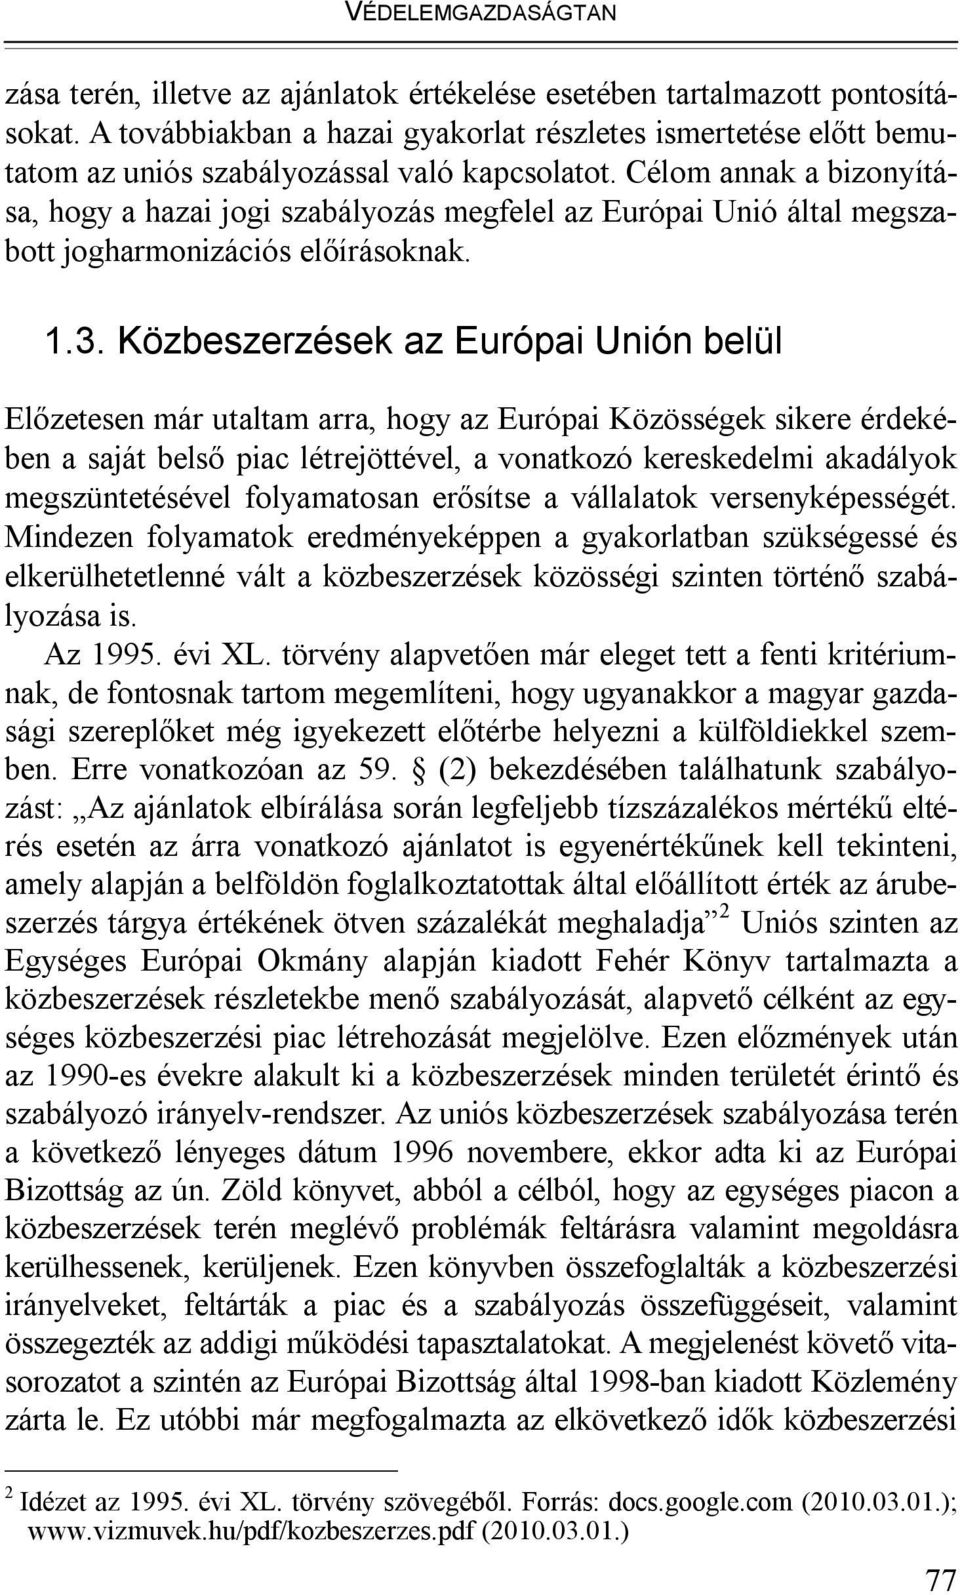 Célom annak a bizonyítása, hogy a hazai jogi szabályozás megfelel az Európai Unió által megszabott jogharmonizációs előírásoknak. 1.3.